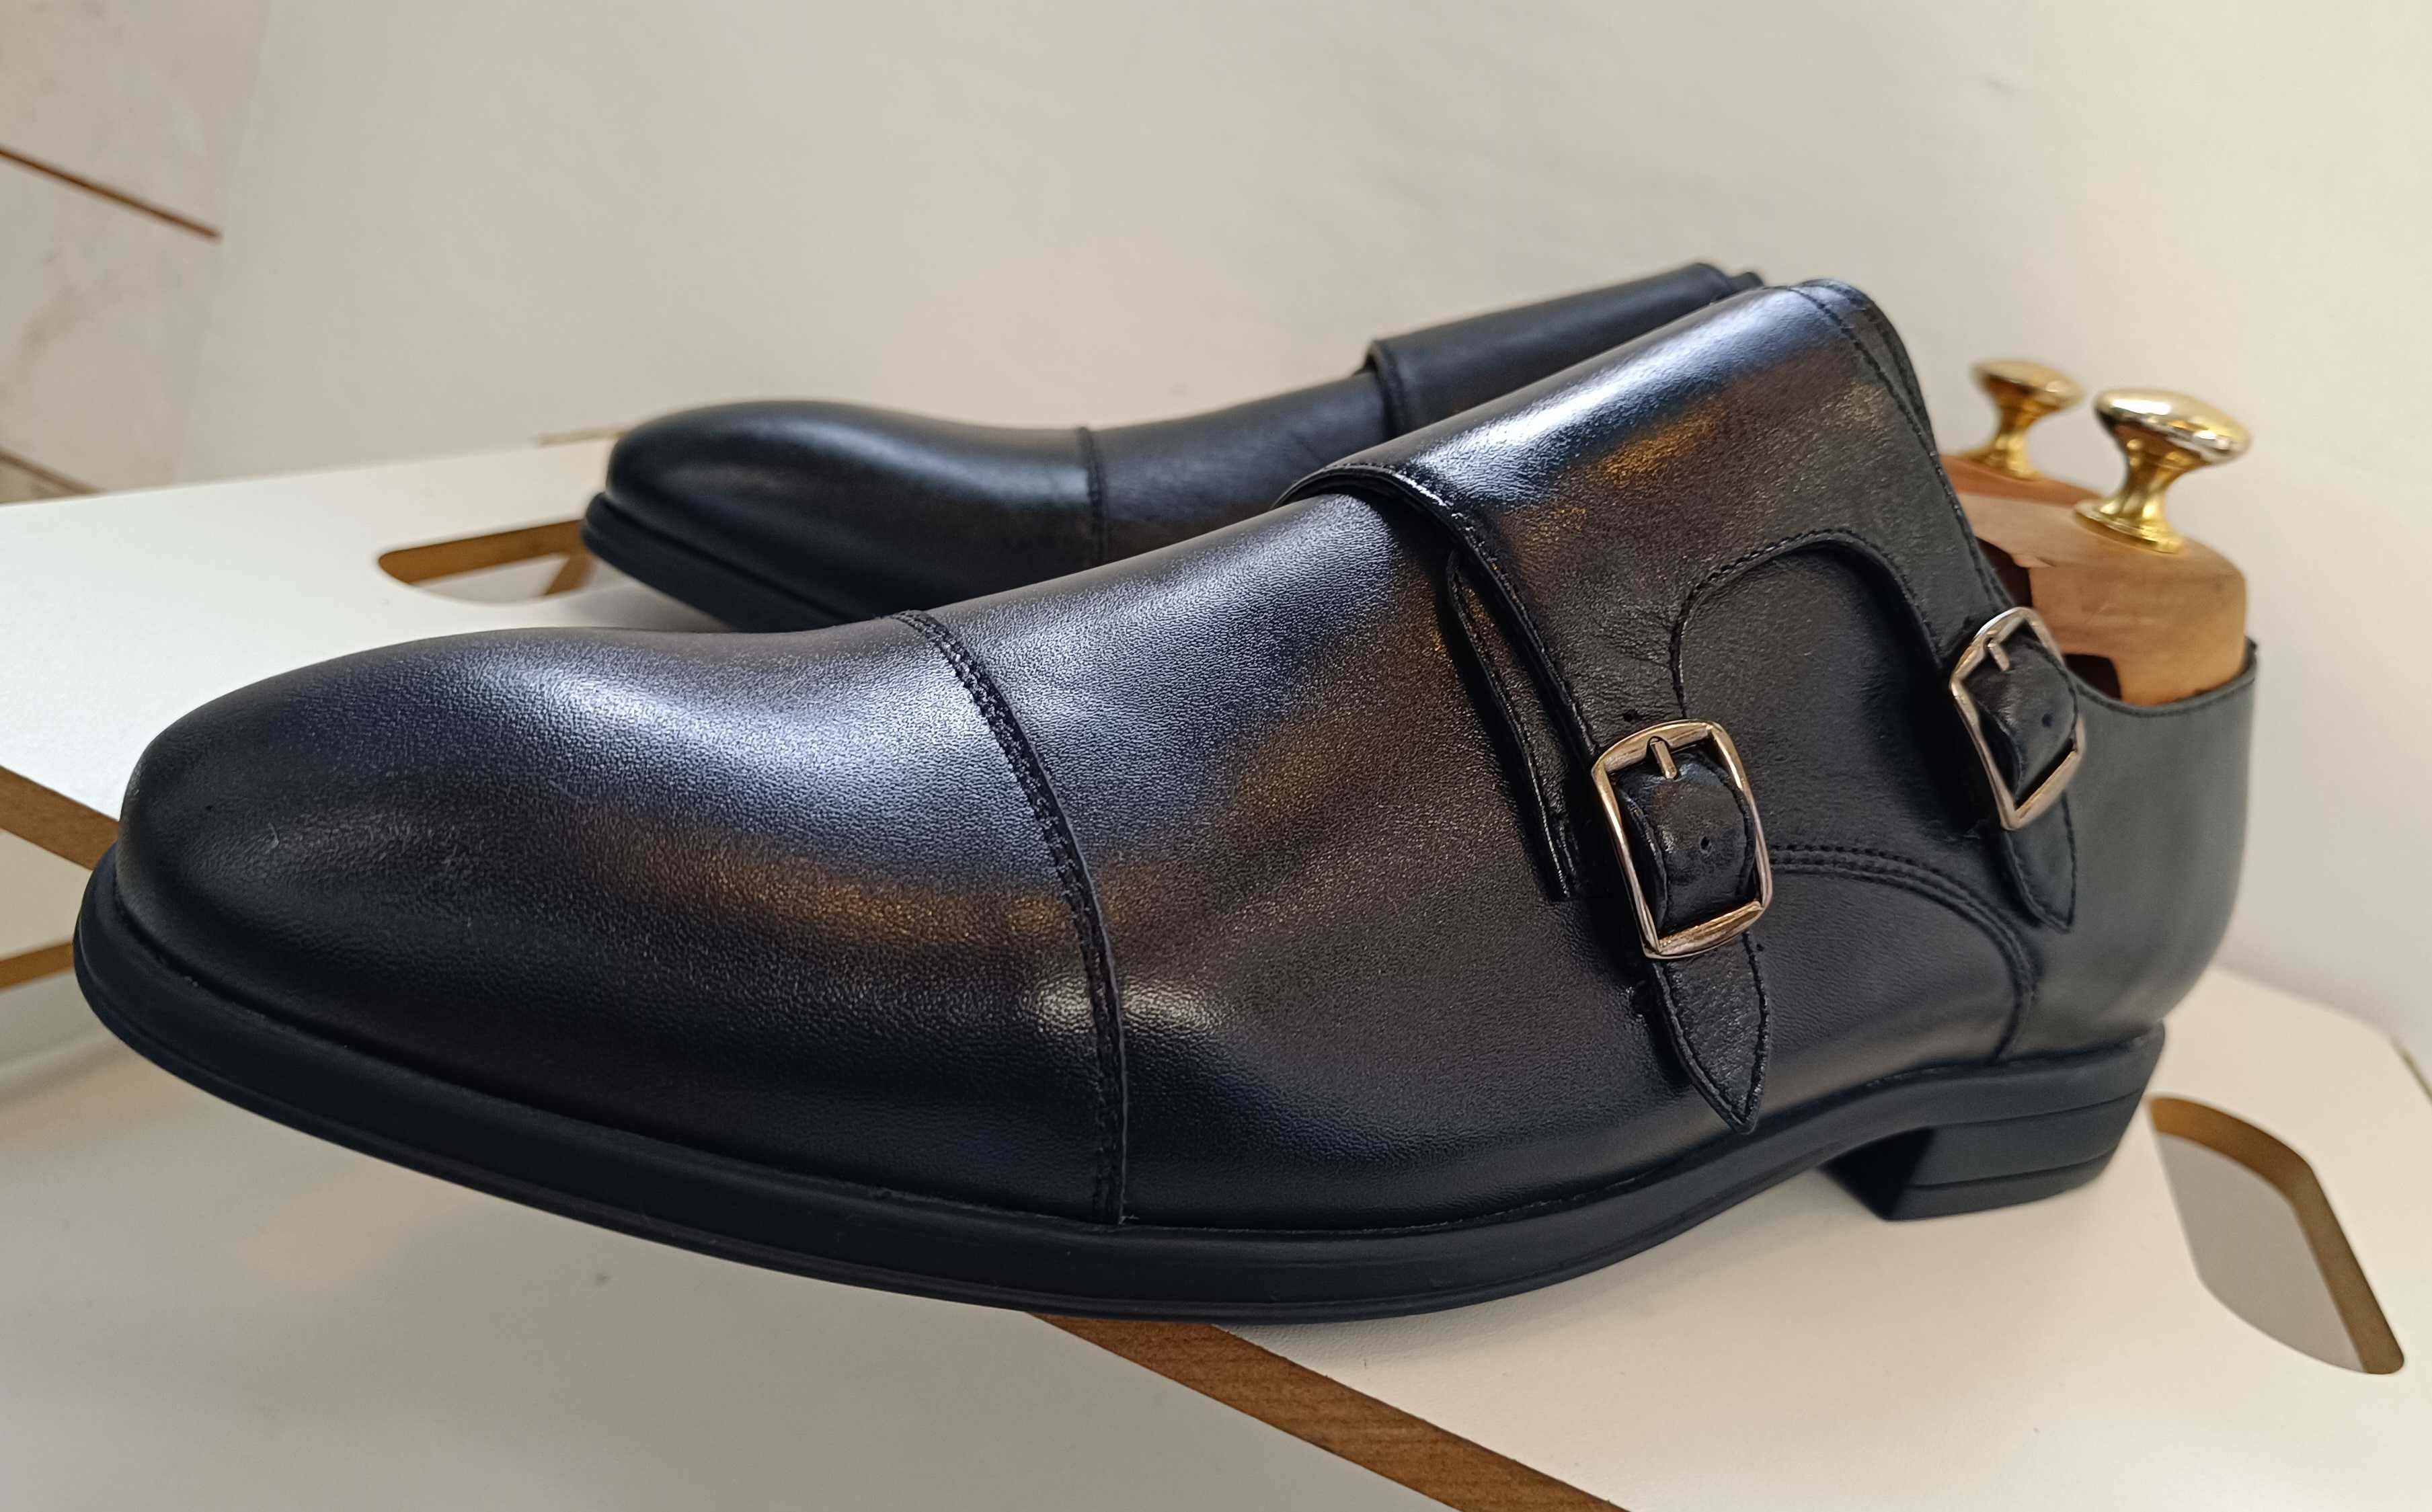 Pantofi double monk 42 43 premium Migato NOI piele naturala moale